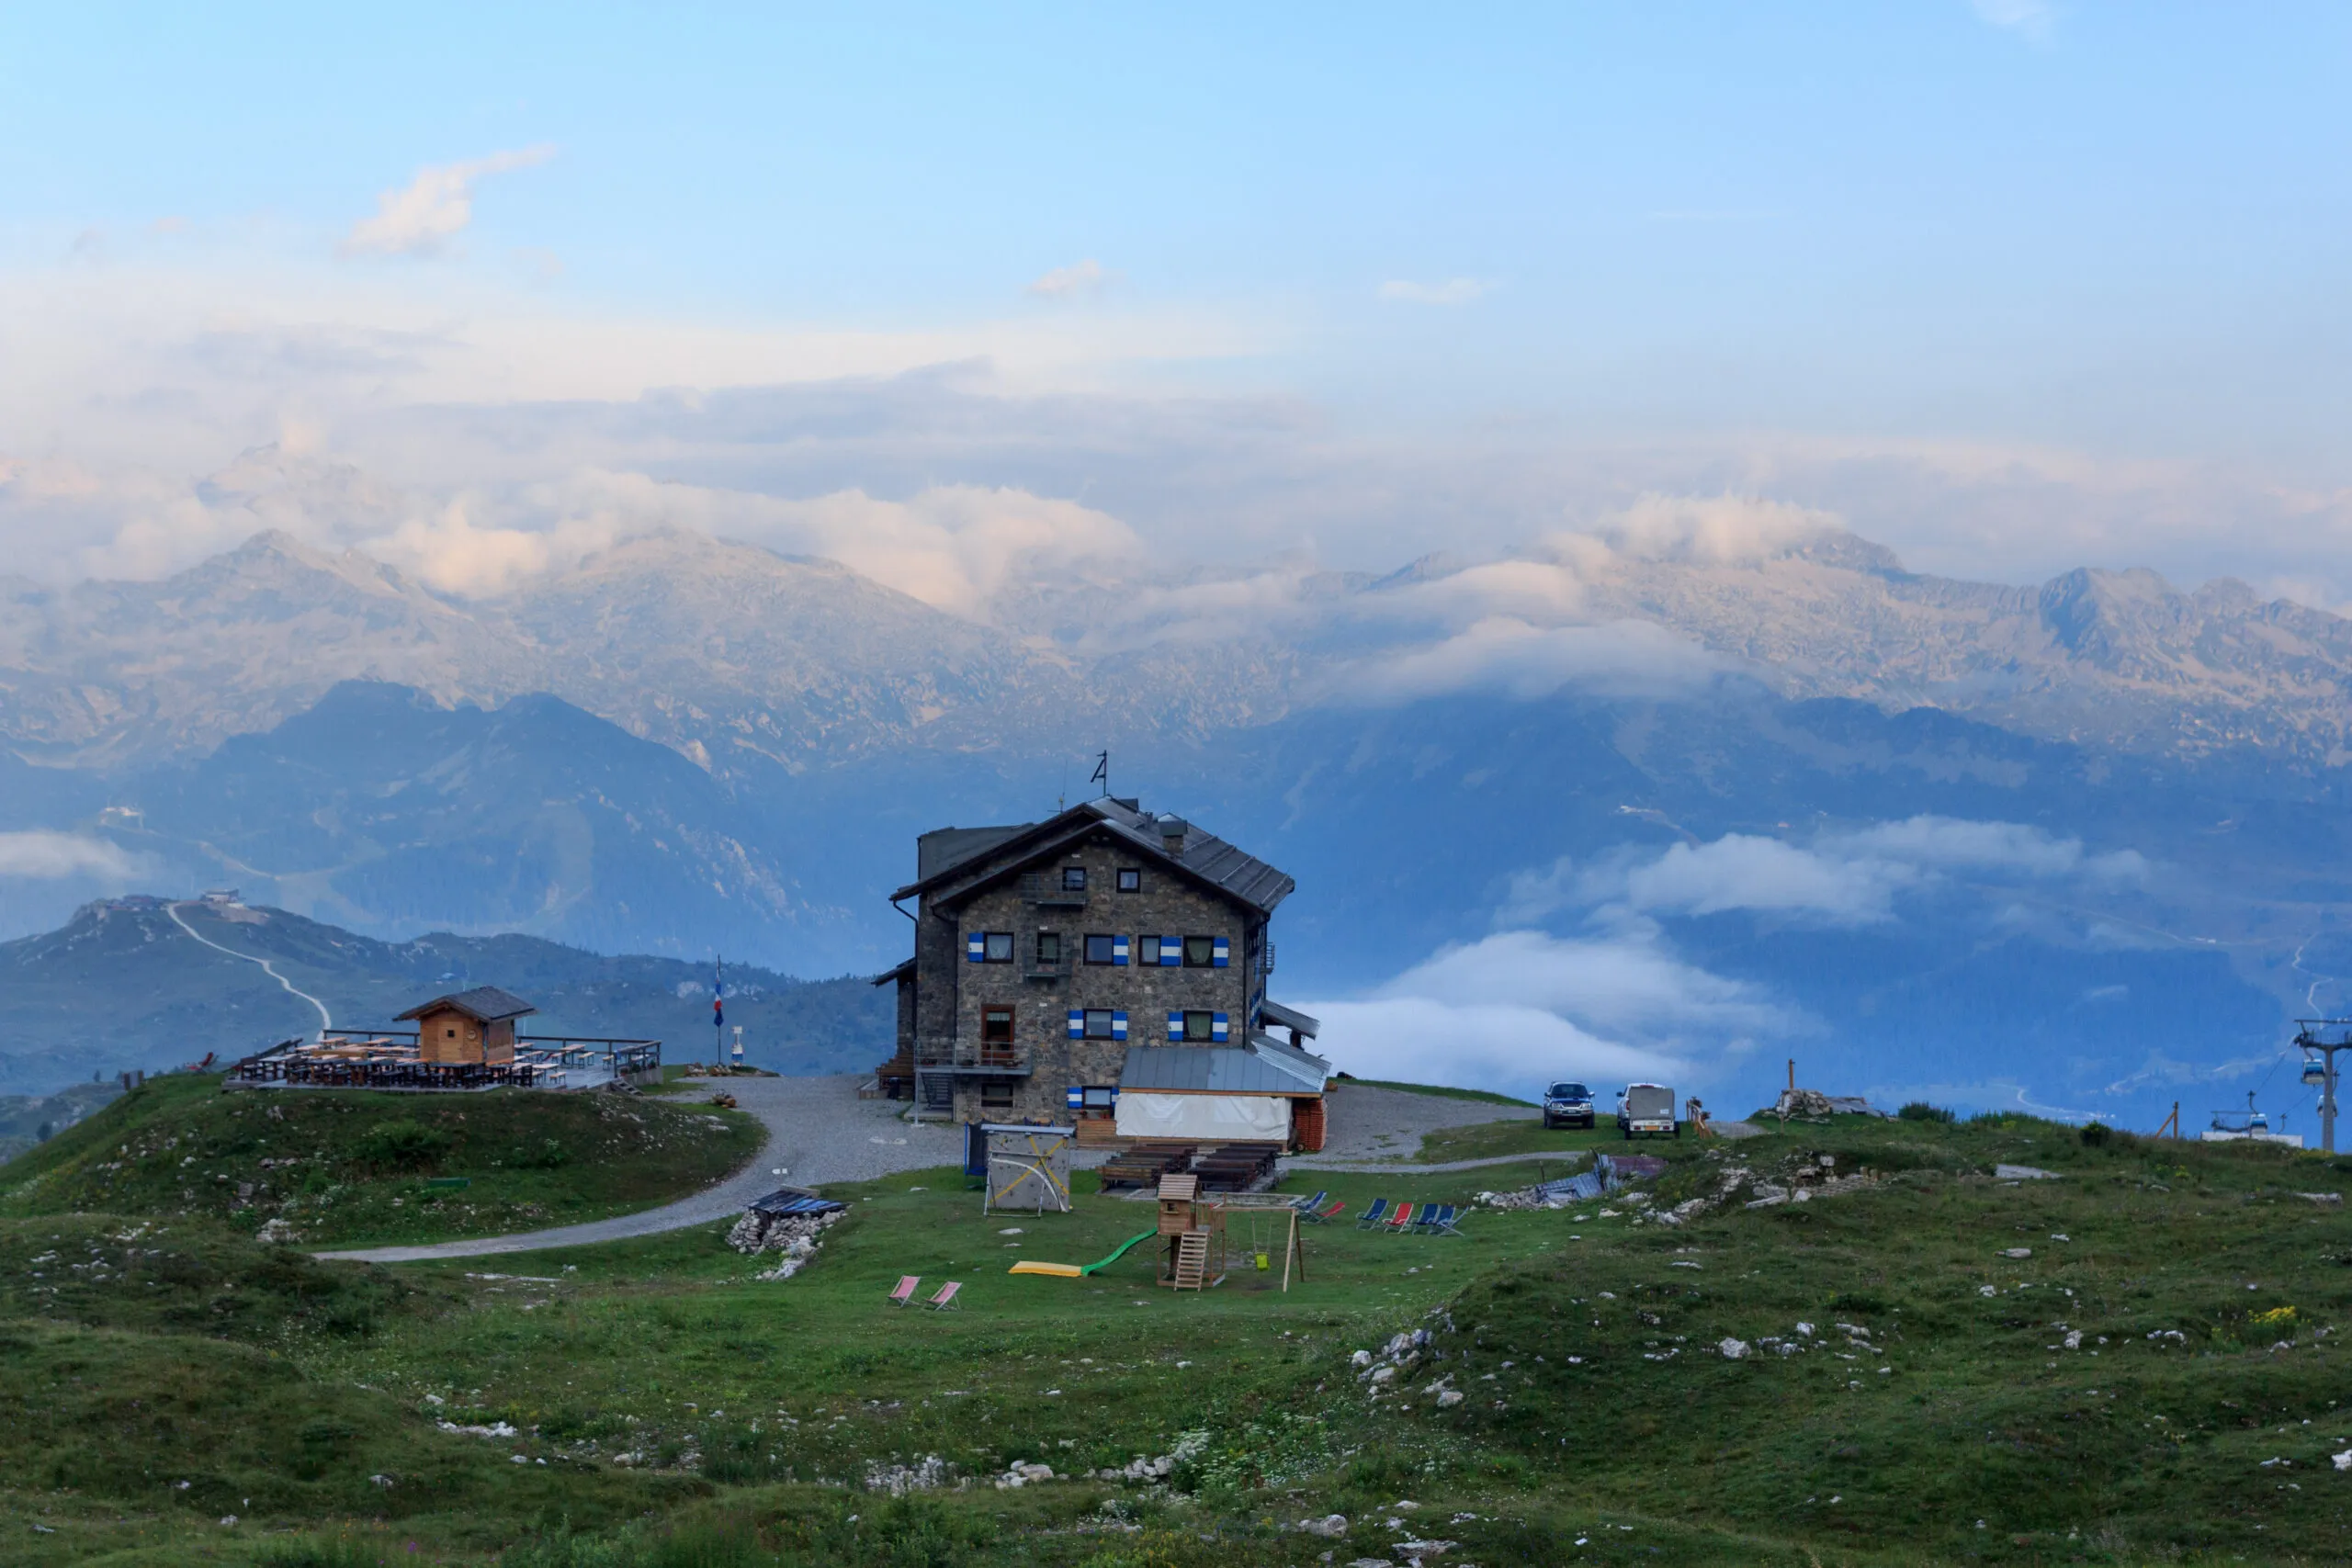 Альпийская хижина Rifugio Graffer и панорама горных Альп Адамелло-Пресанелла, вид на которые открывается из Брента-Доломиты в Италии.